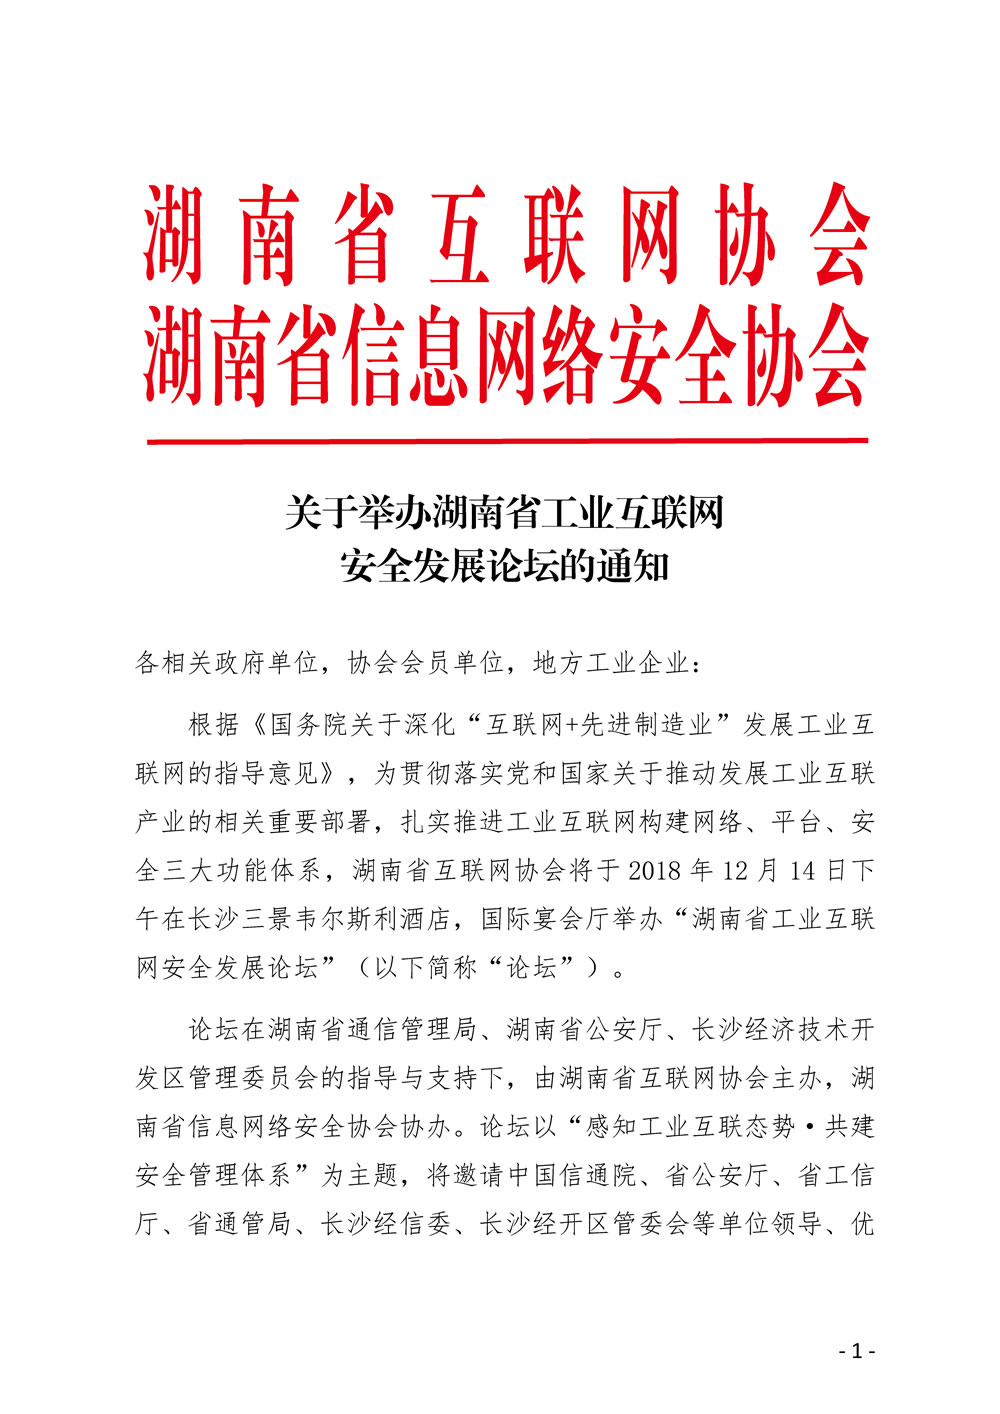 关于举办湖南省工业互联网安全发展论坛的通知